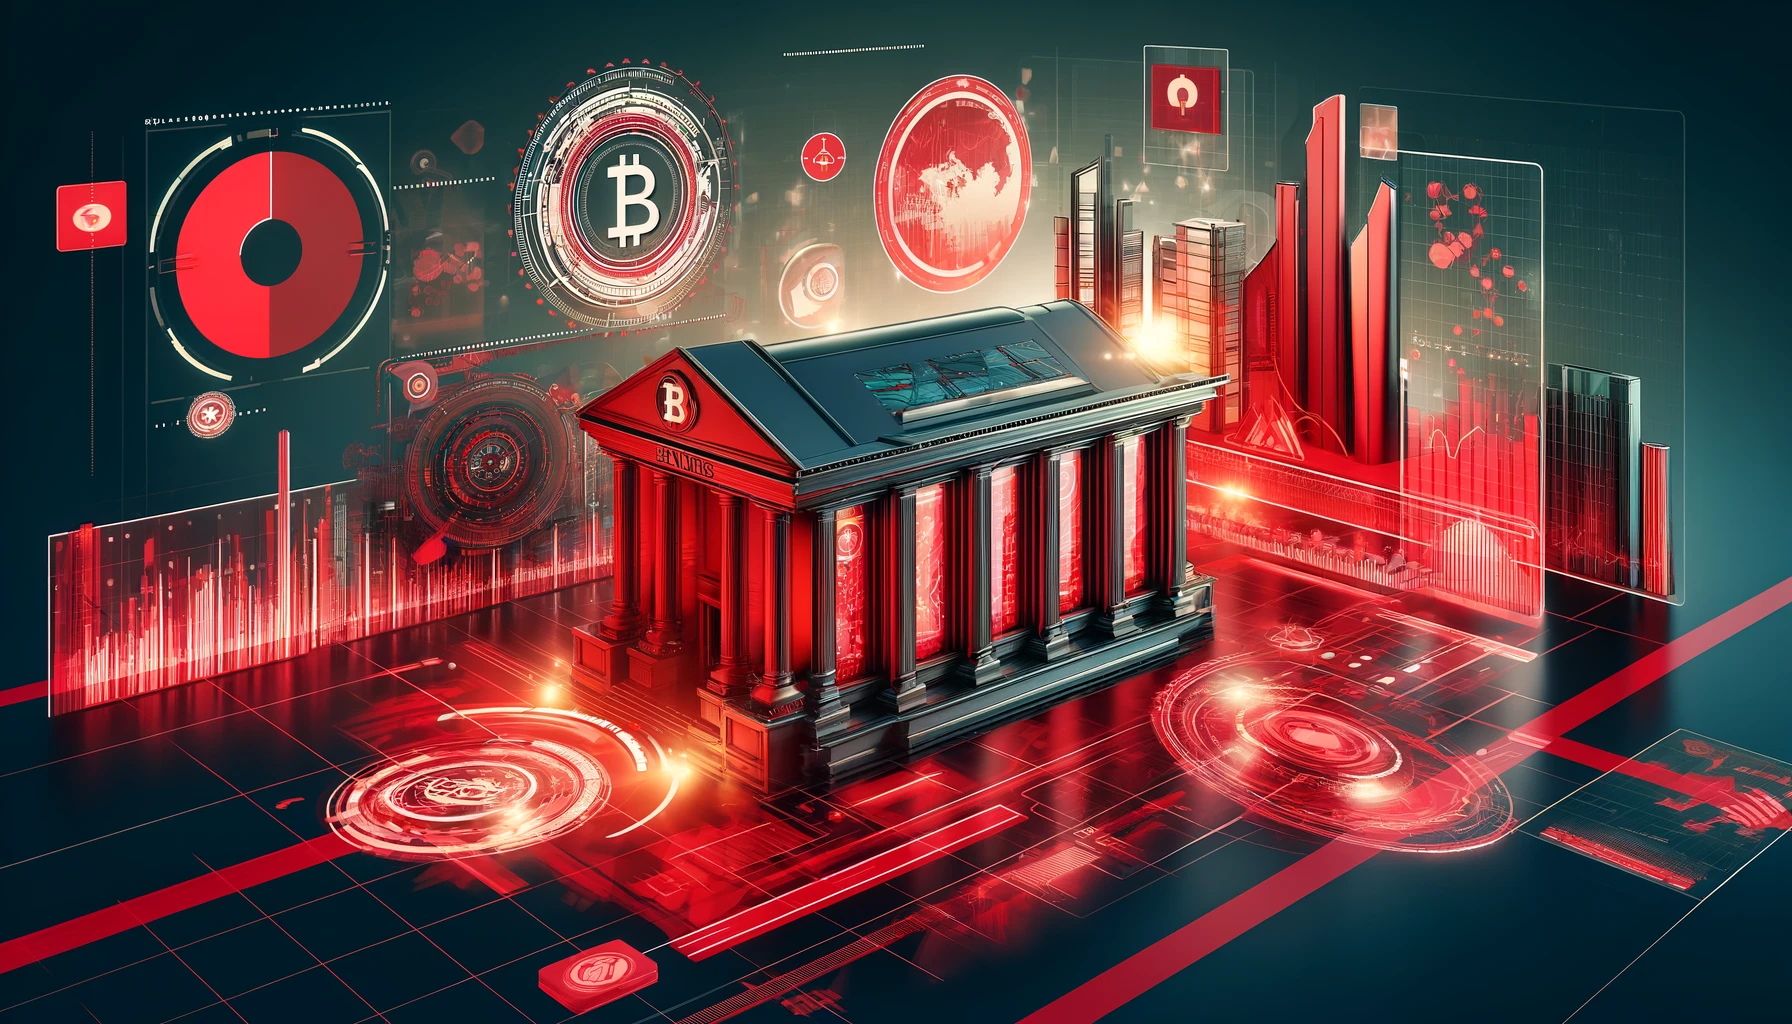 赤色を基調とした未来的なデジタルファイナンスの風景、スタイライズされた銀行ビルと金融グラフが表示されたデジタルスクリーン、デジタル通貨を象徴する抽象的なシンボルが描かれている。